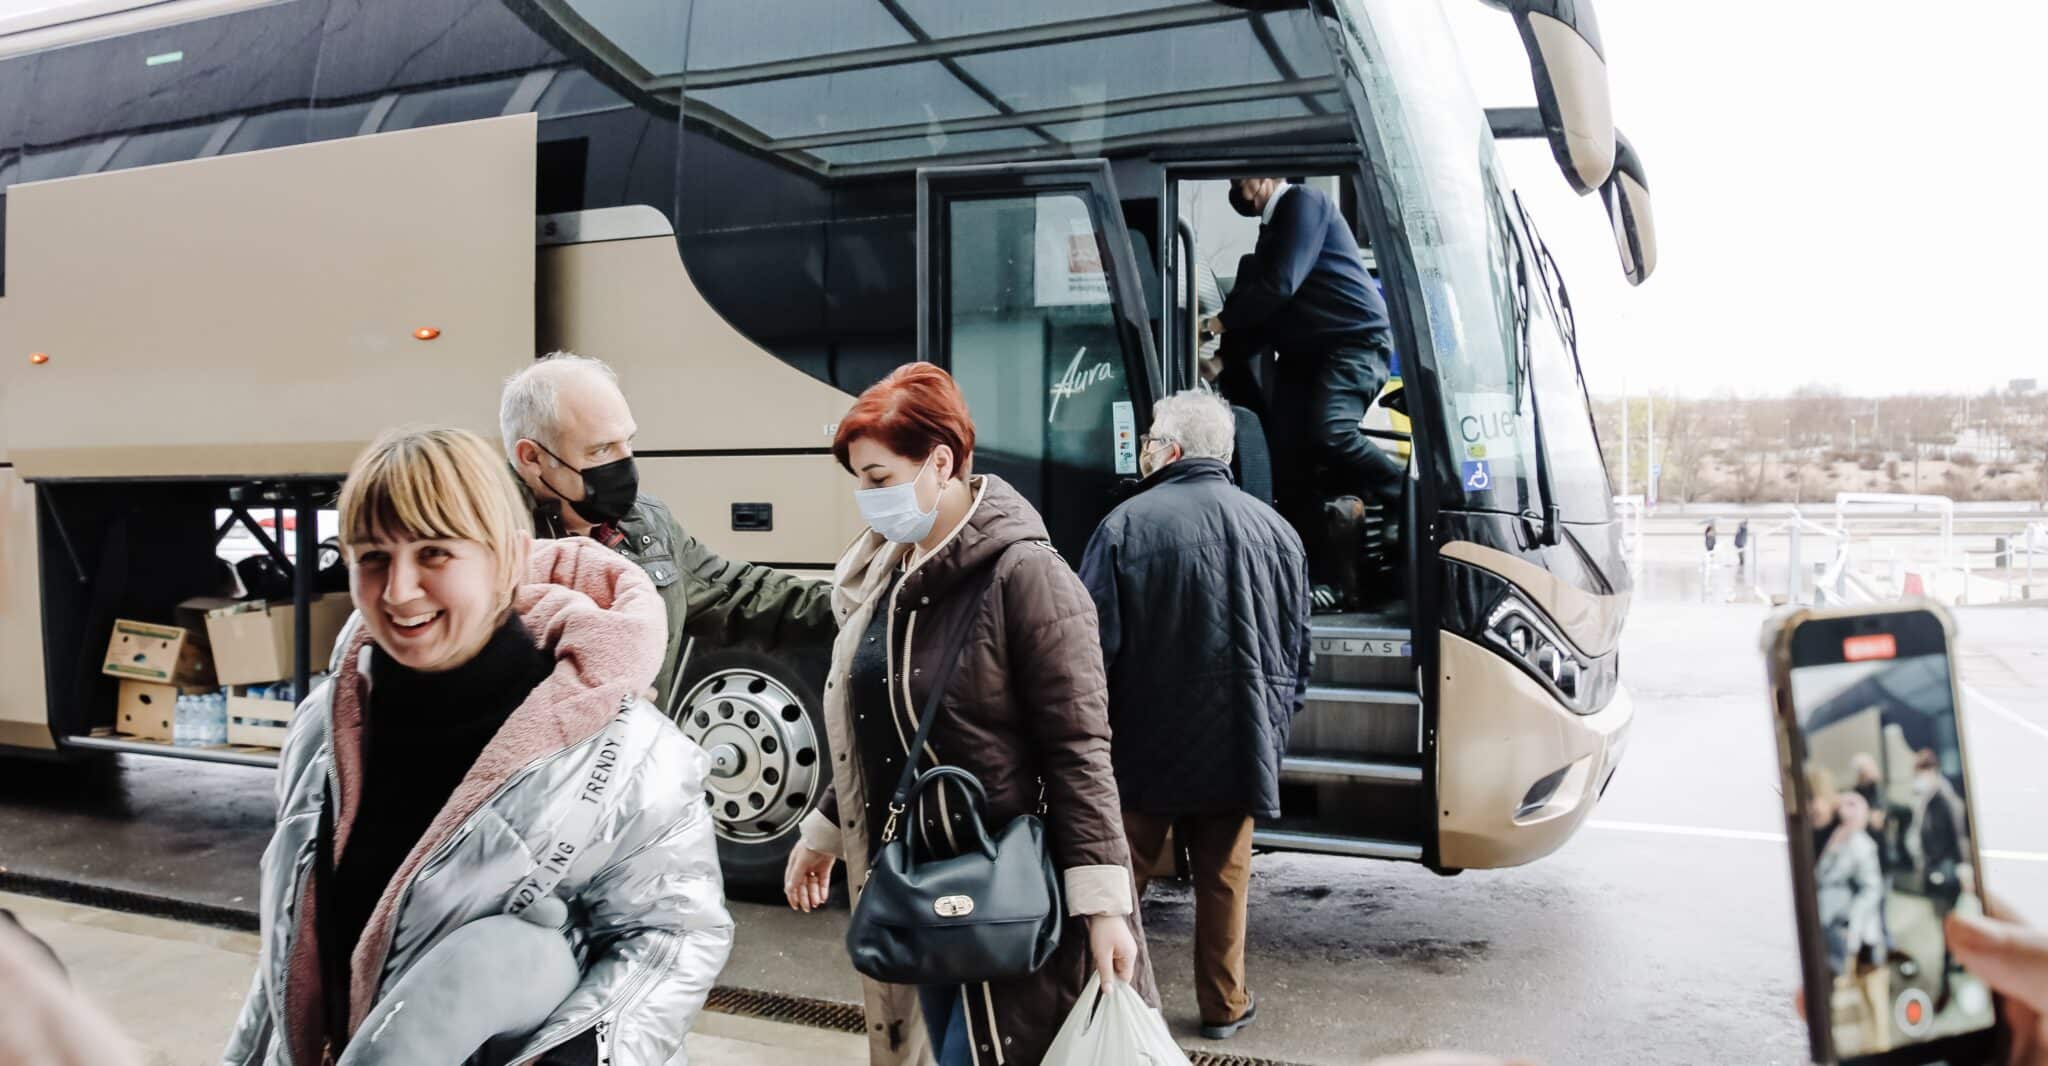 Varias refugiadas ucranianas llegando al Hospital de Emergencias Enfermera Isabel Zendal, en Madrid.